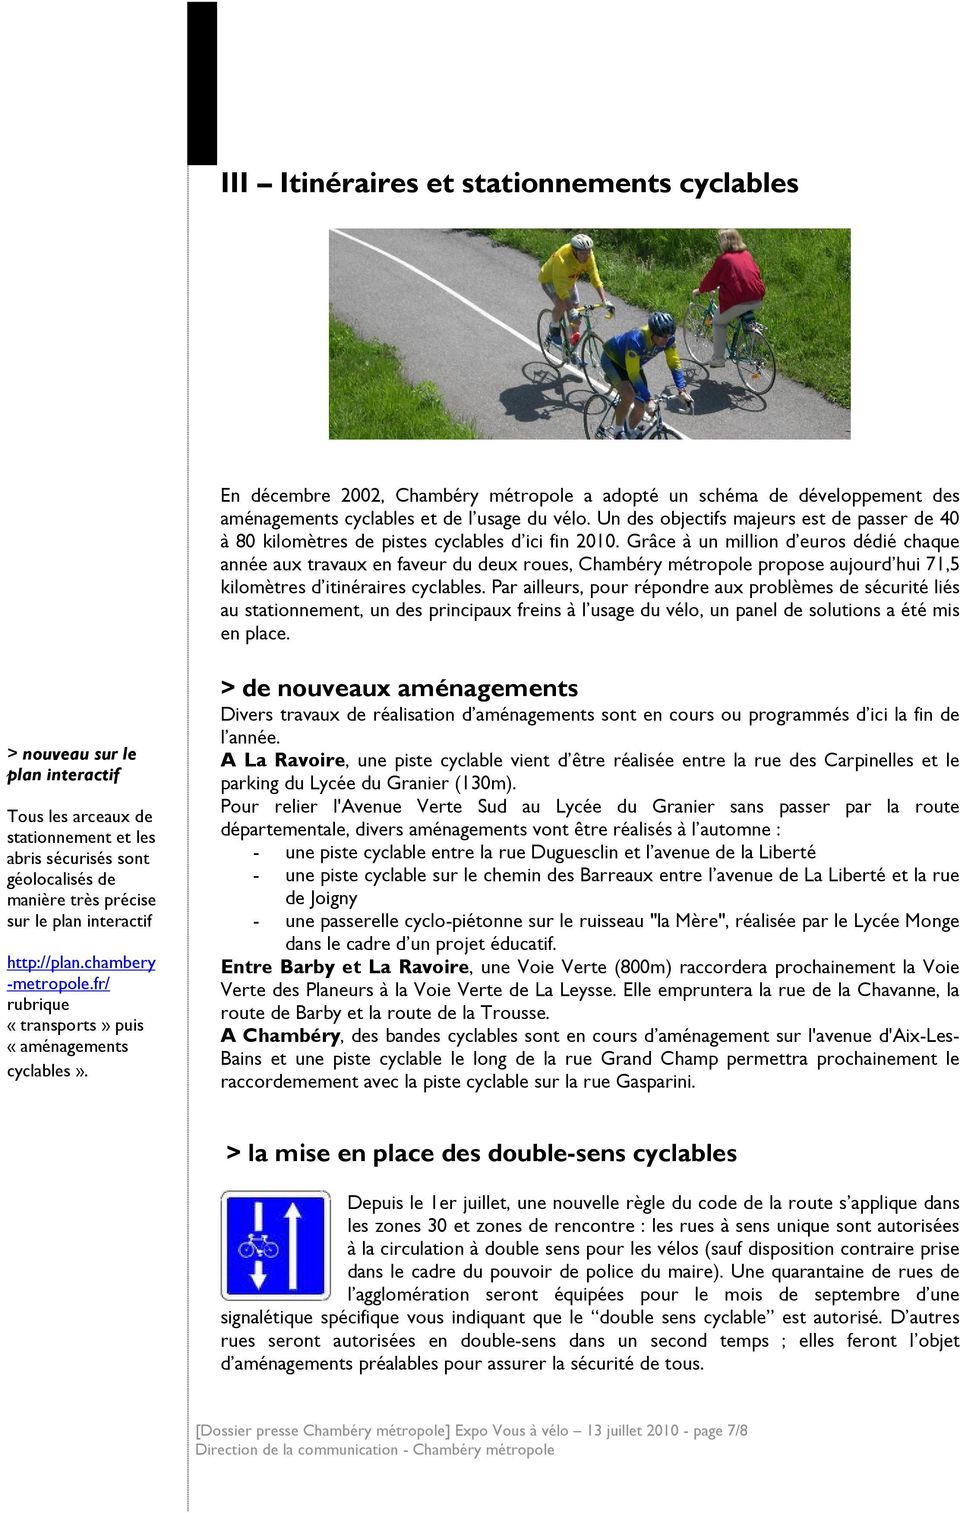 Grâce à un million d euros dédié chaque année aux travaux en faveur du deux roues, Chambéry métropole propose aujourd hui 71,5 kilomètres d itinéraires cyclables.